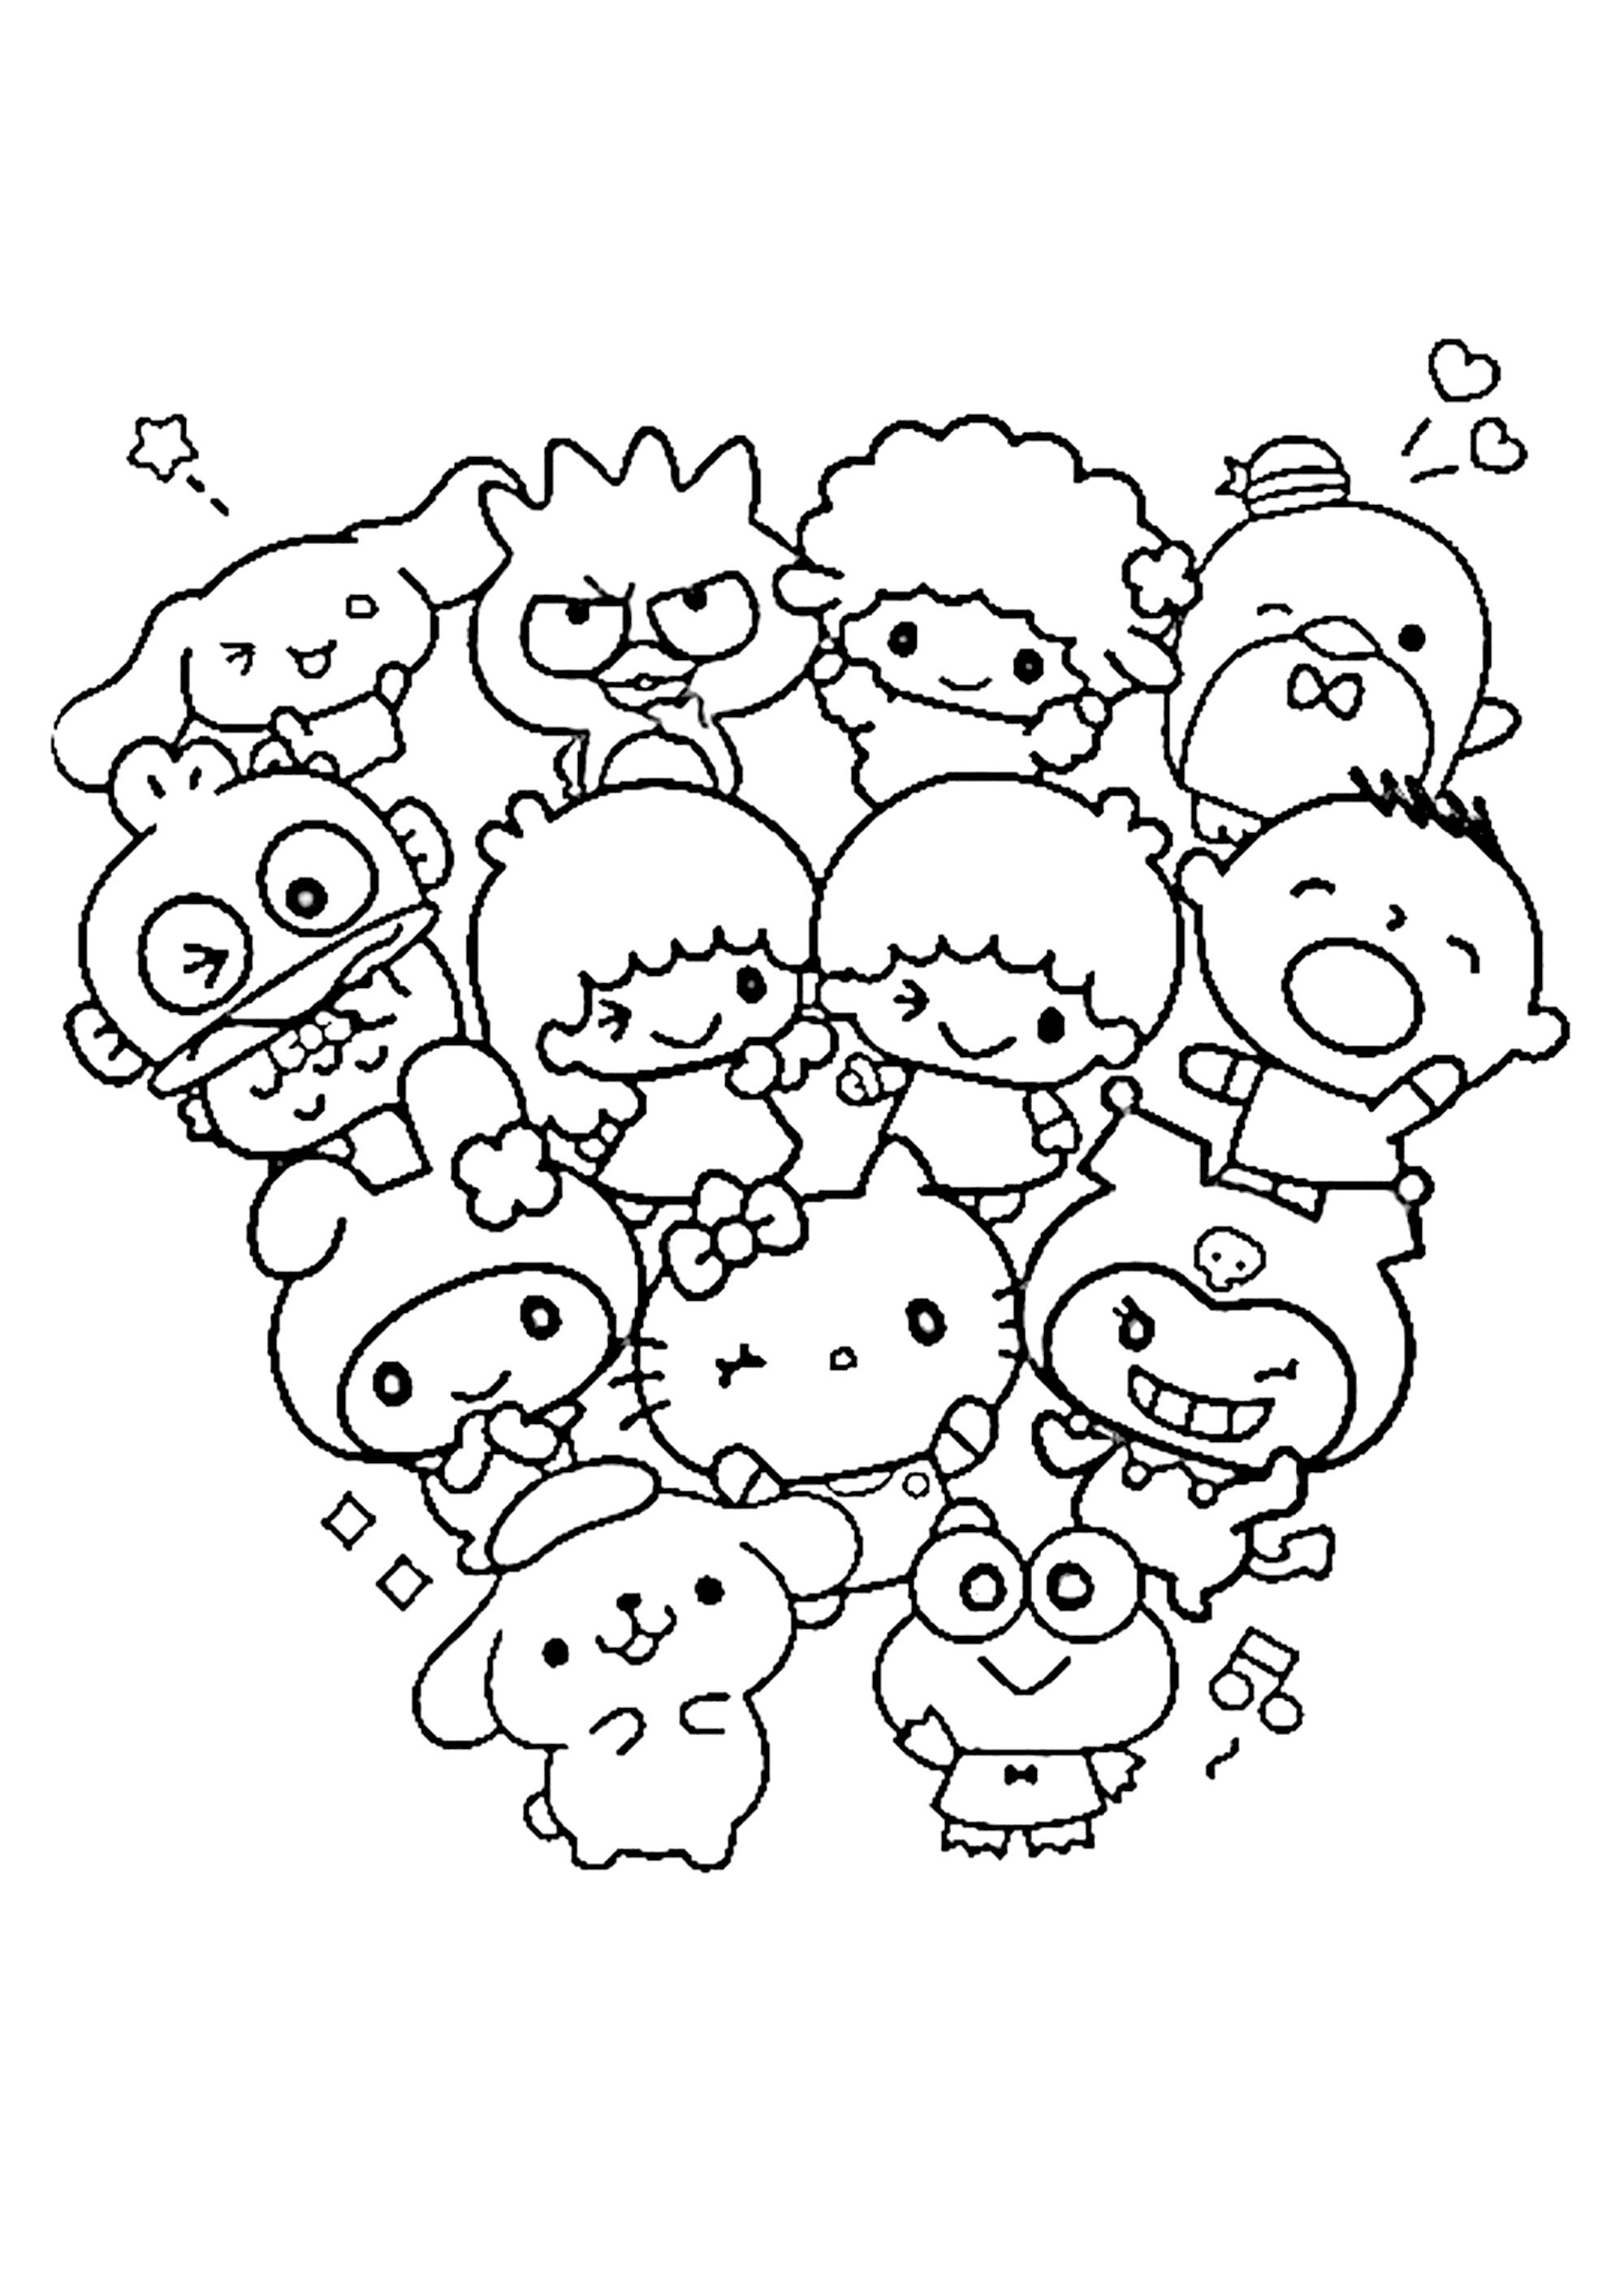 Colorear las adorables criaturas de Sanrio. Encuentra y colorea Hello Kitty, Kuromi, My Melody ...